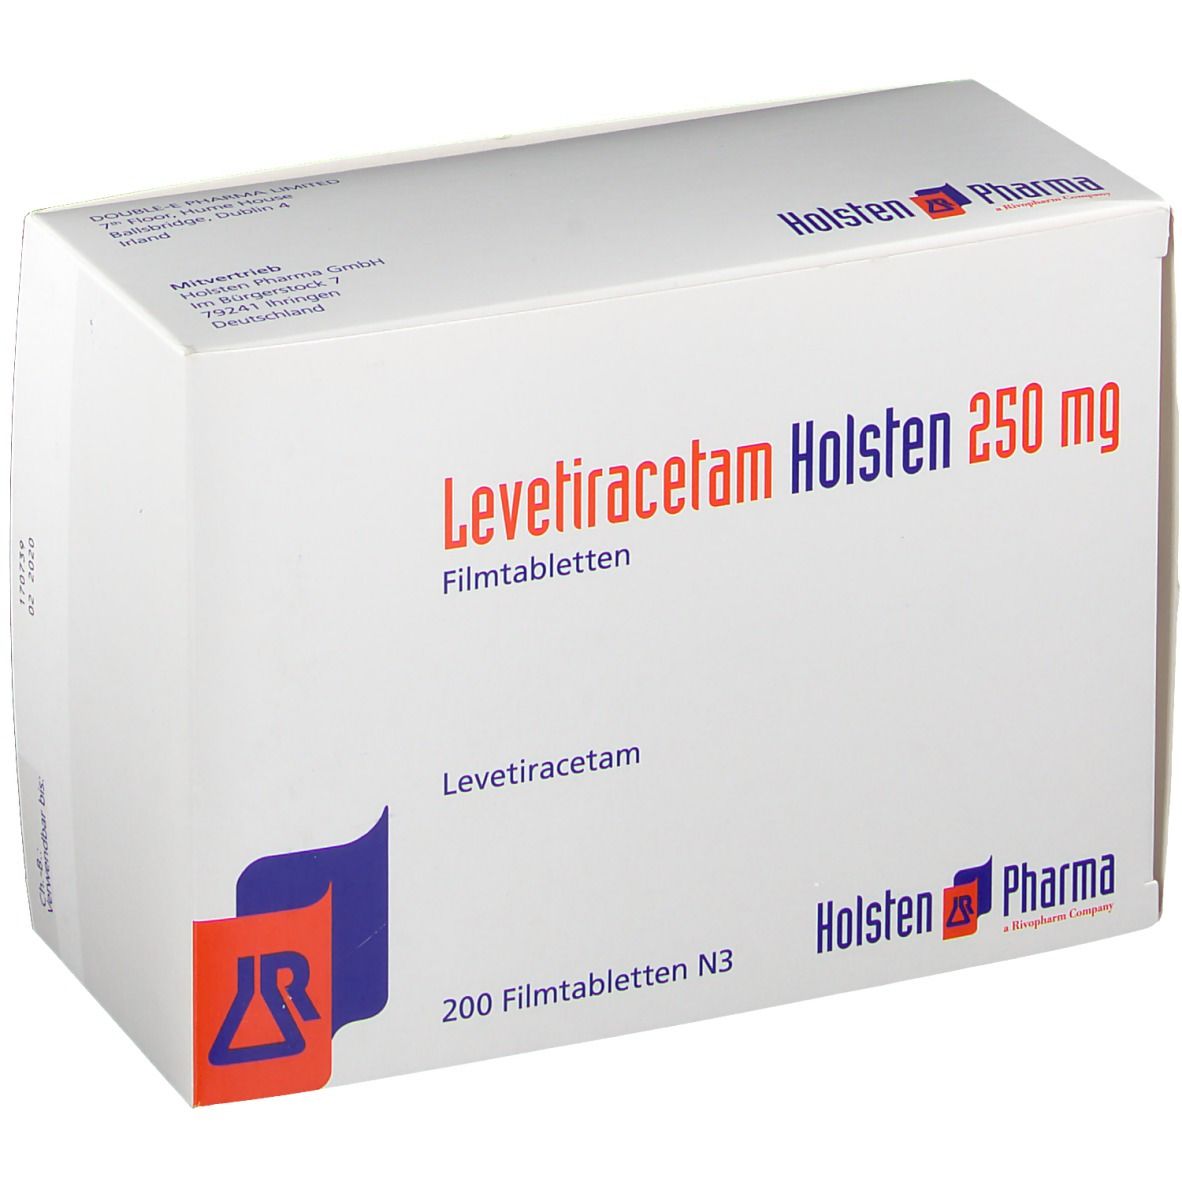 Levetiracetam Holsten 250 mg